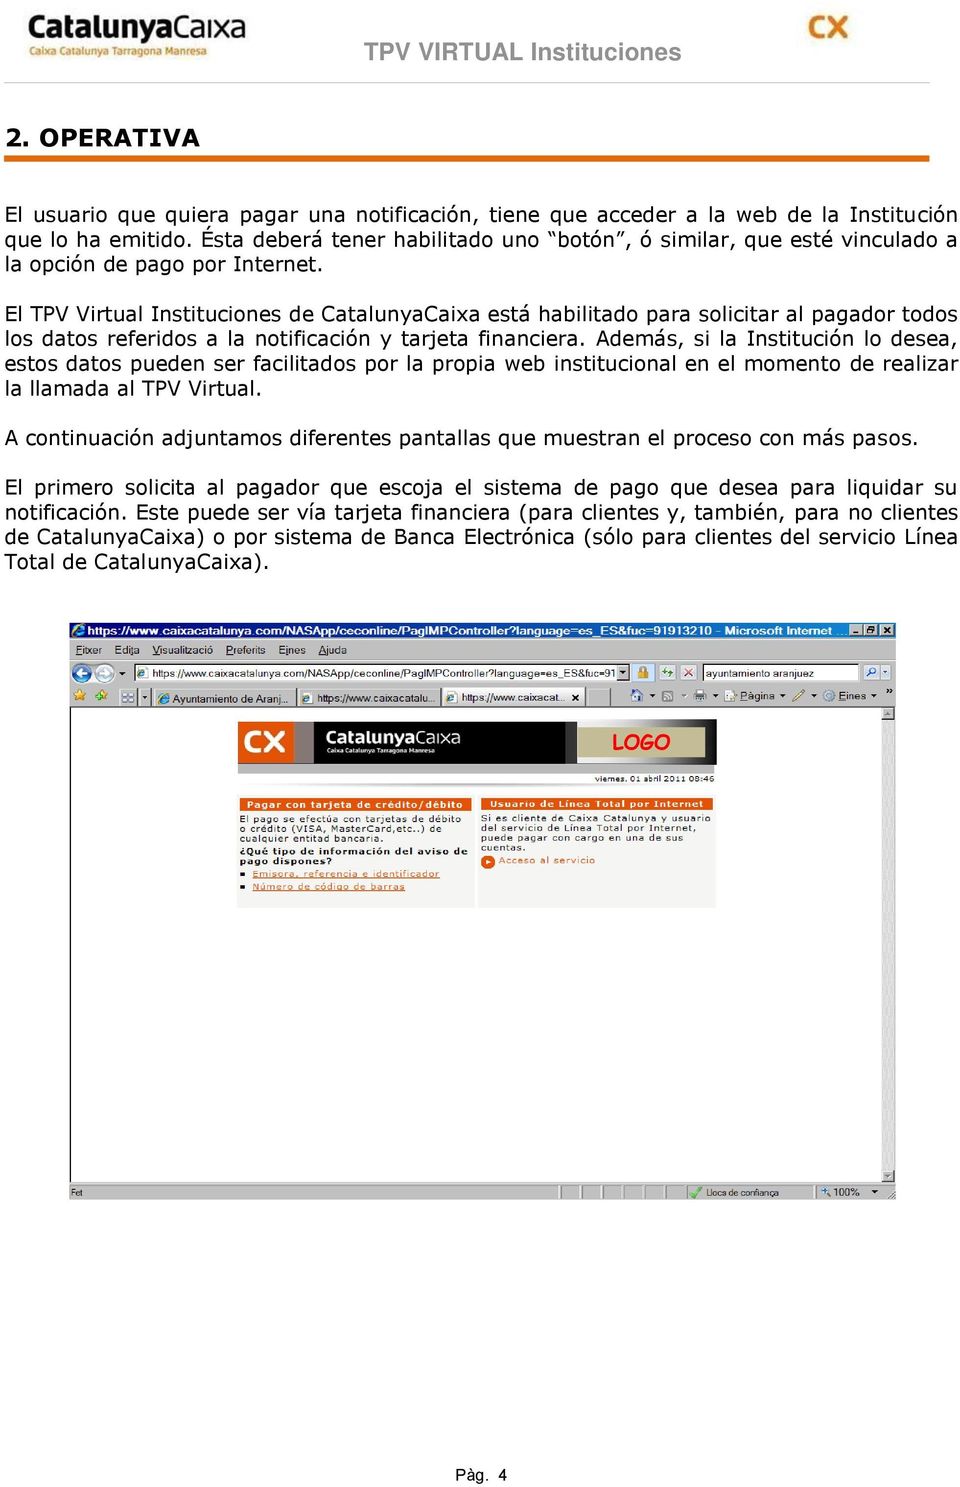 El TPV Virtual Instituciones de CatalunyaCaixa está habilitado para solicitar al pagador todos los datos referidos a la notificación y tarjeta financiera.